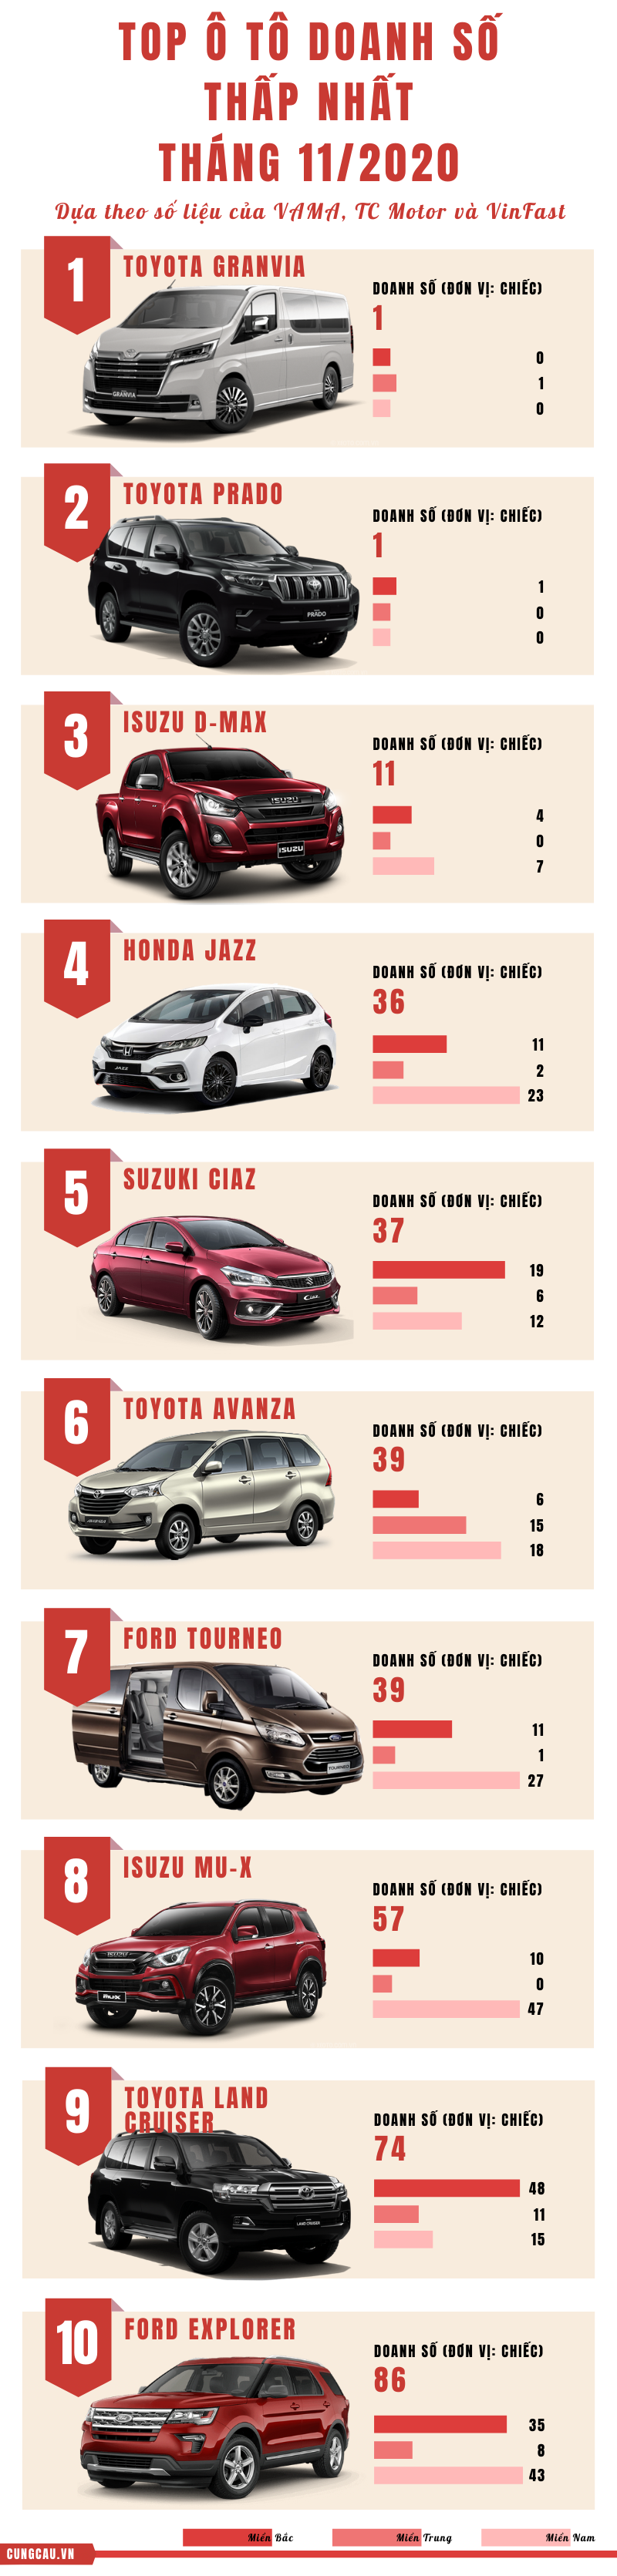 top 10 ô tô bán ế nhất tháng 11-2020